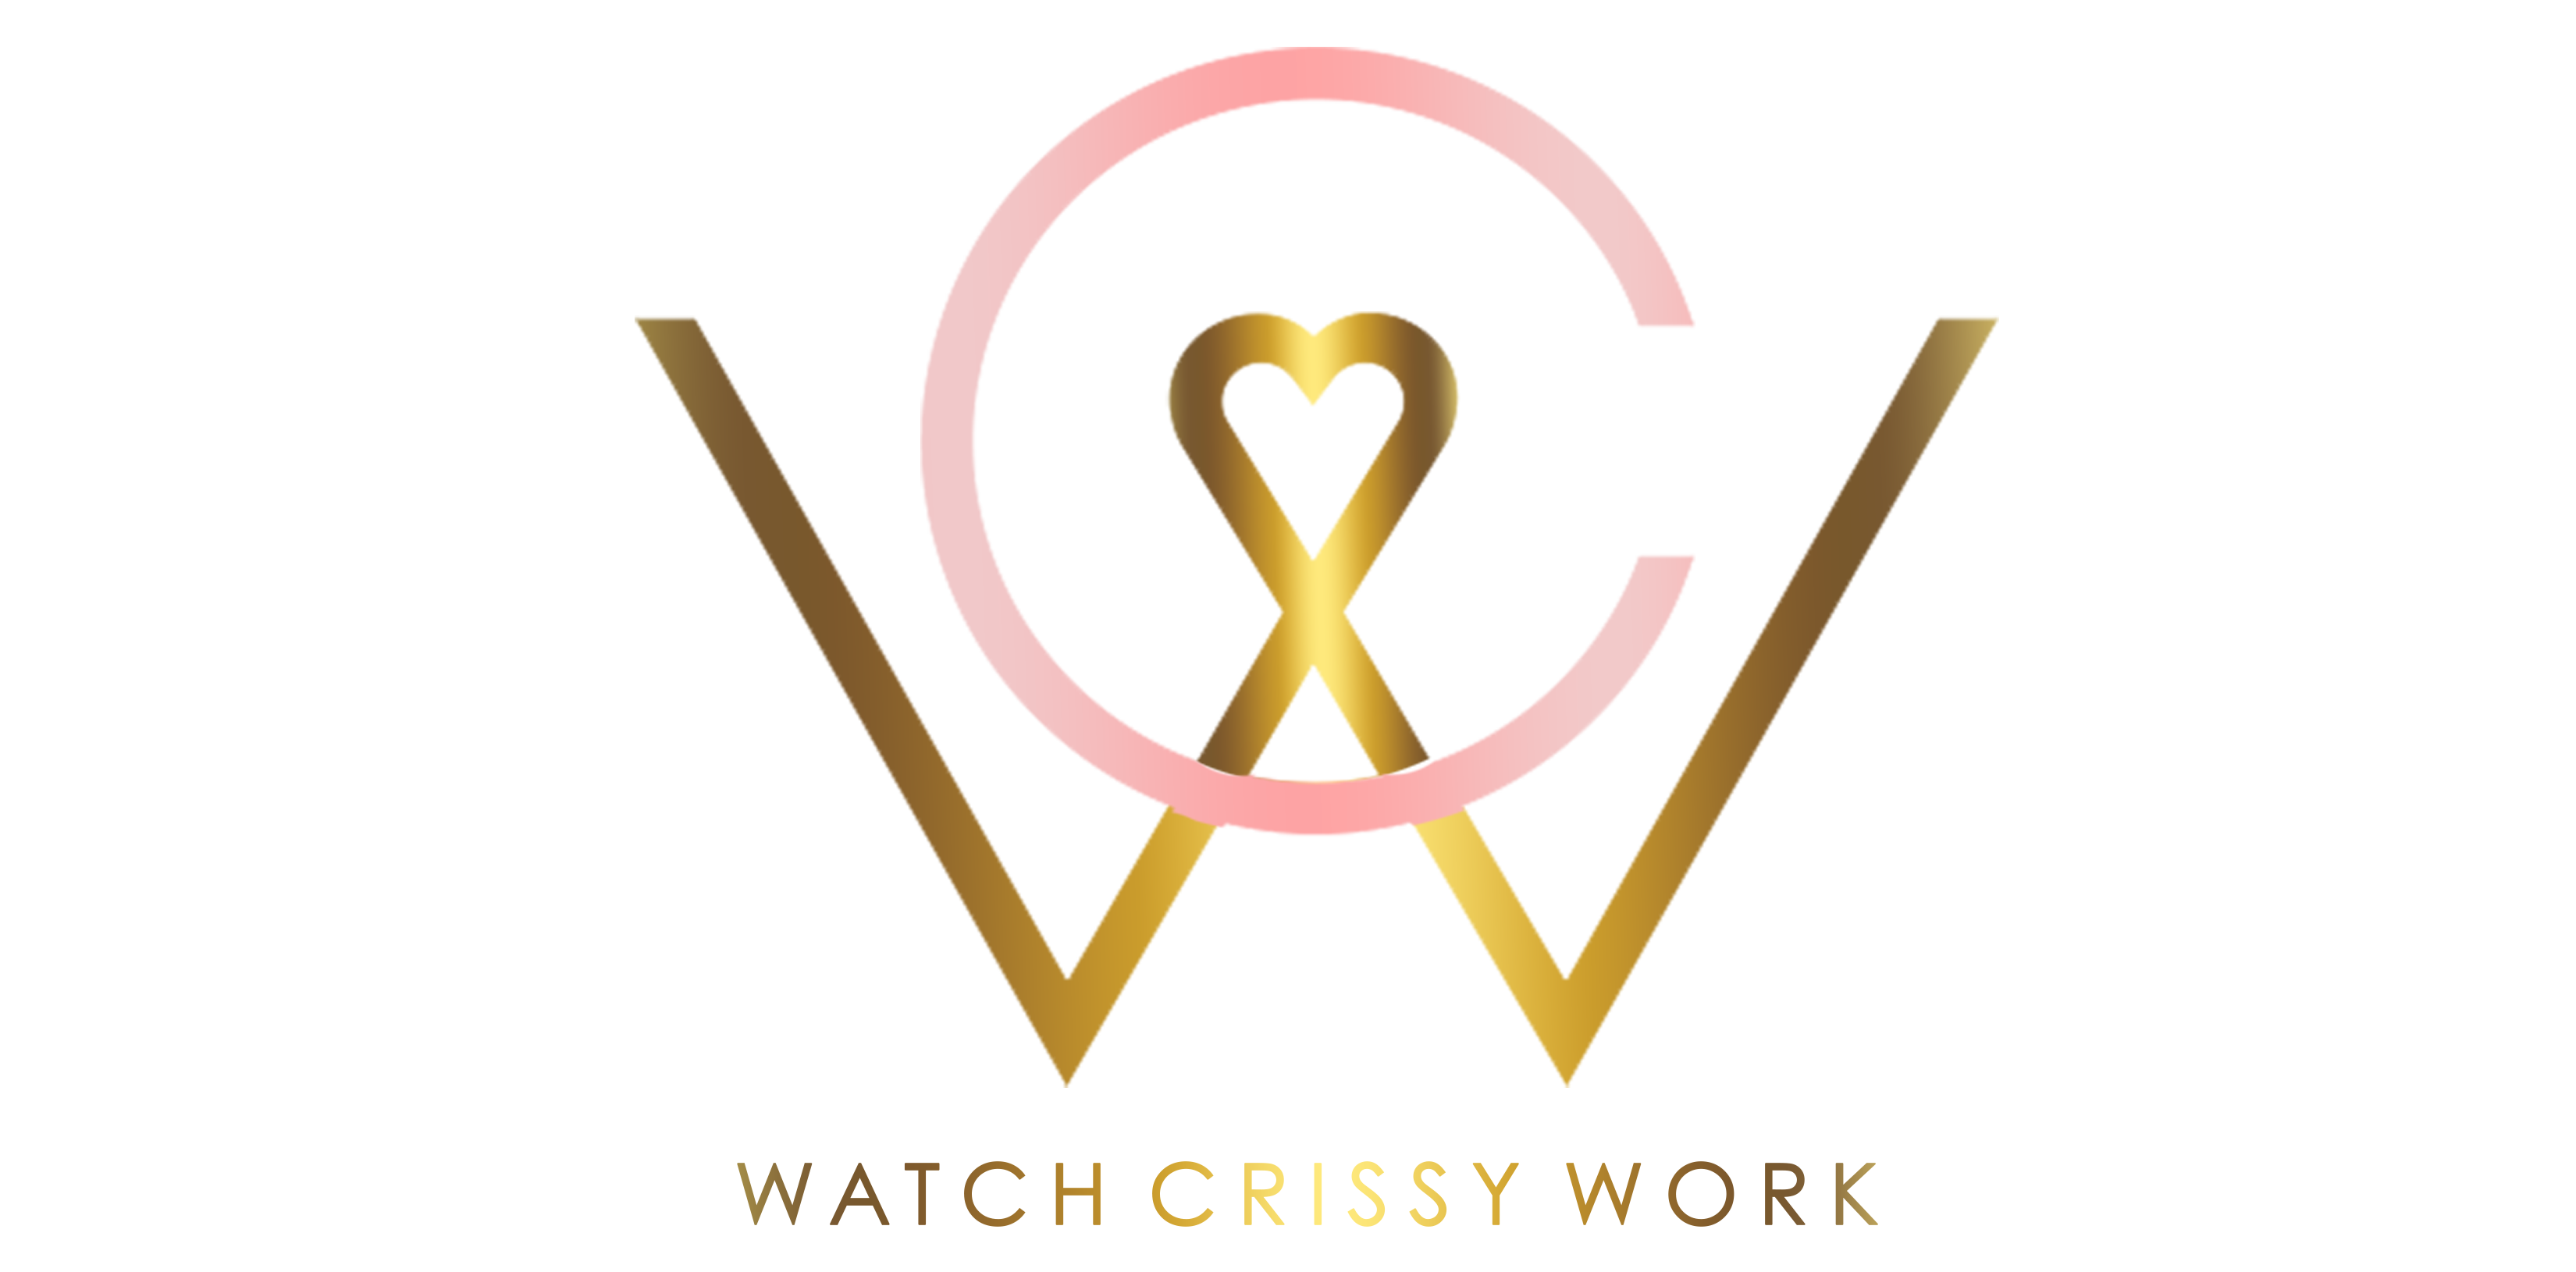 WatchCrissyWork